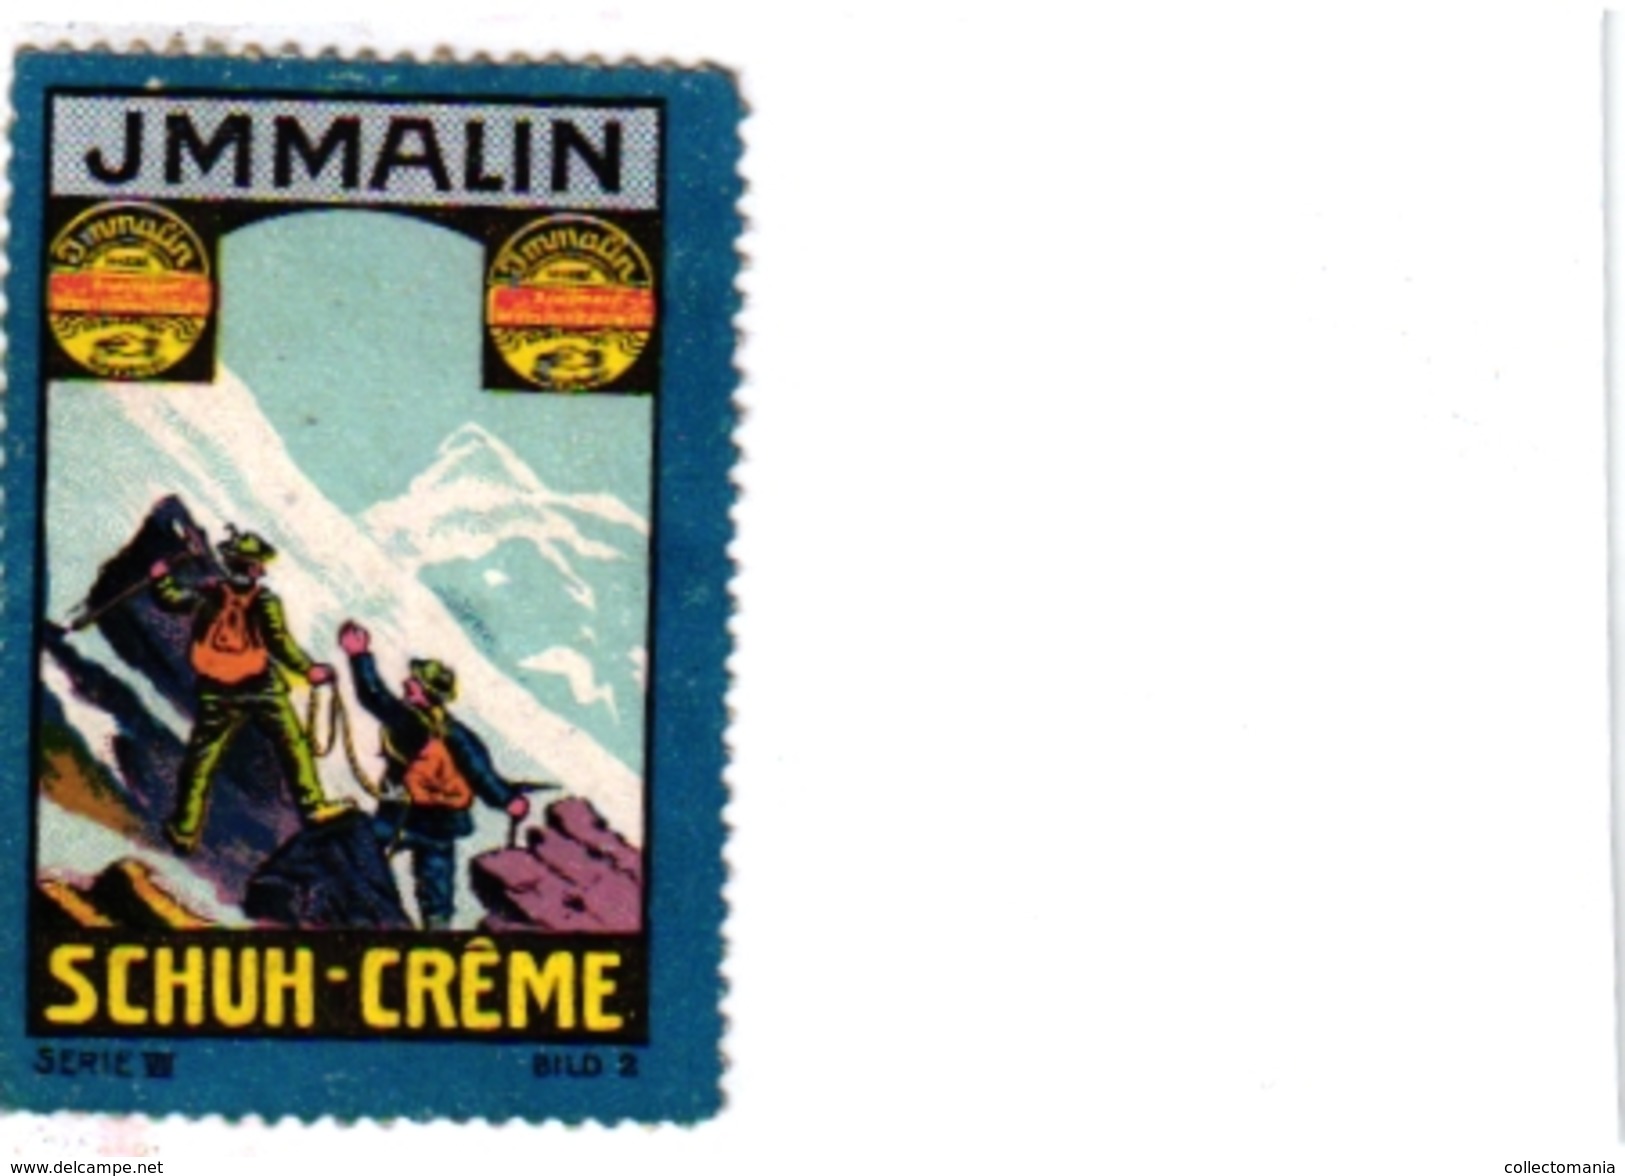 8 Poster Stamp Cinderella Reklame Marke Pub  ALPINISME Mountaineering Skiing Montagne =gebirgte Berg Climbing Klimmen VG - Wintersport